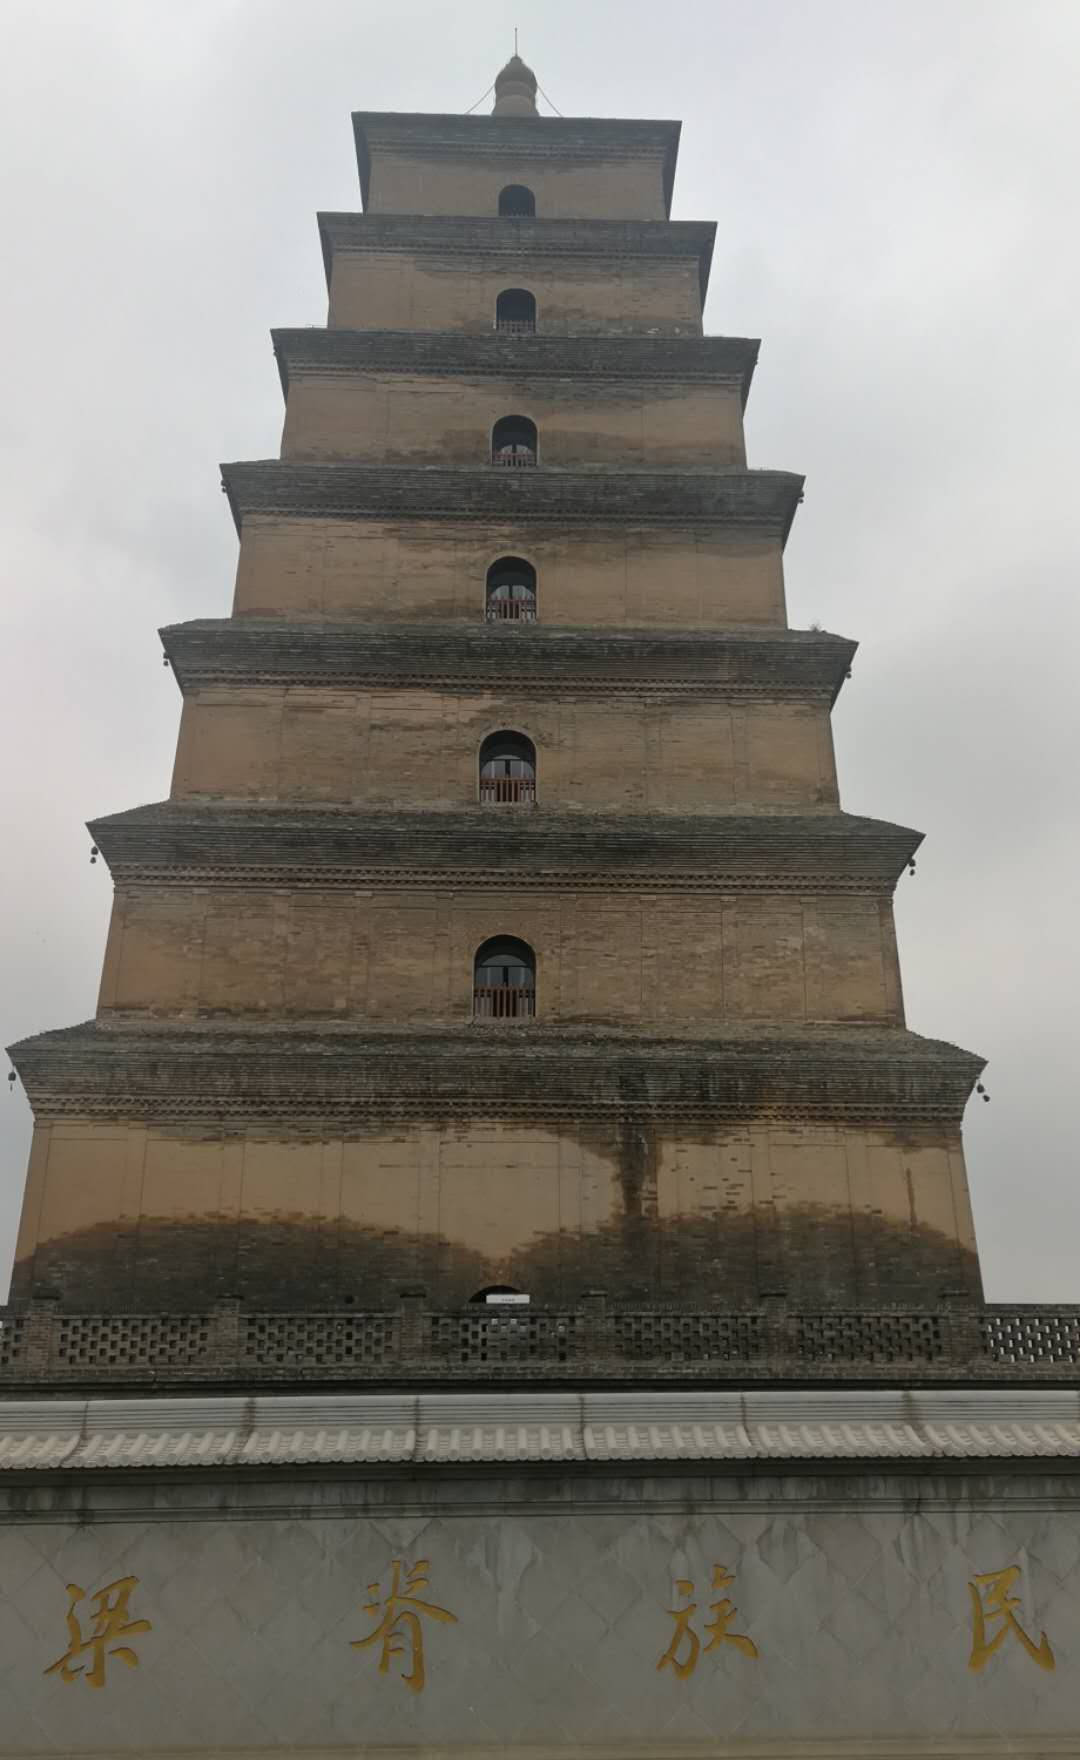 【携程攻略】西安大雁塔景点,大雁塔位于陕西省西安市的的大慈恩寺内，又名“慈恩寺塔“，建于唐朝…